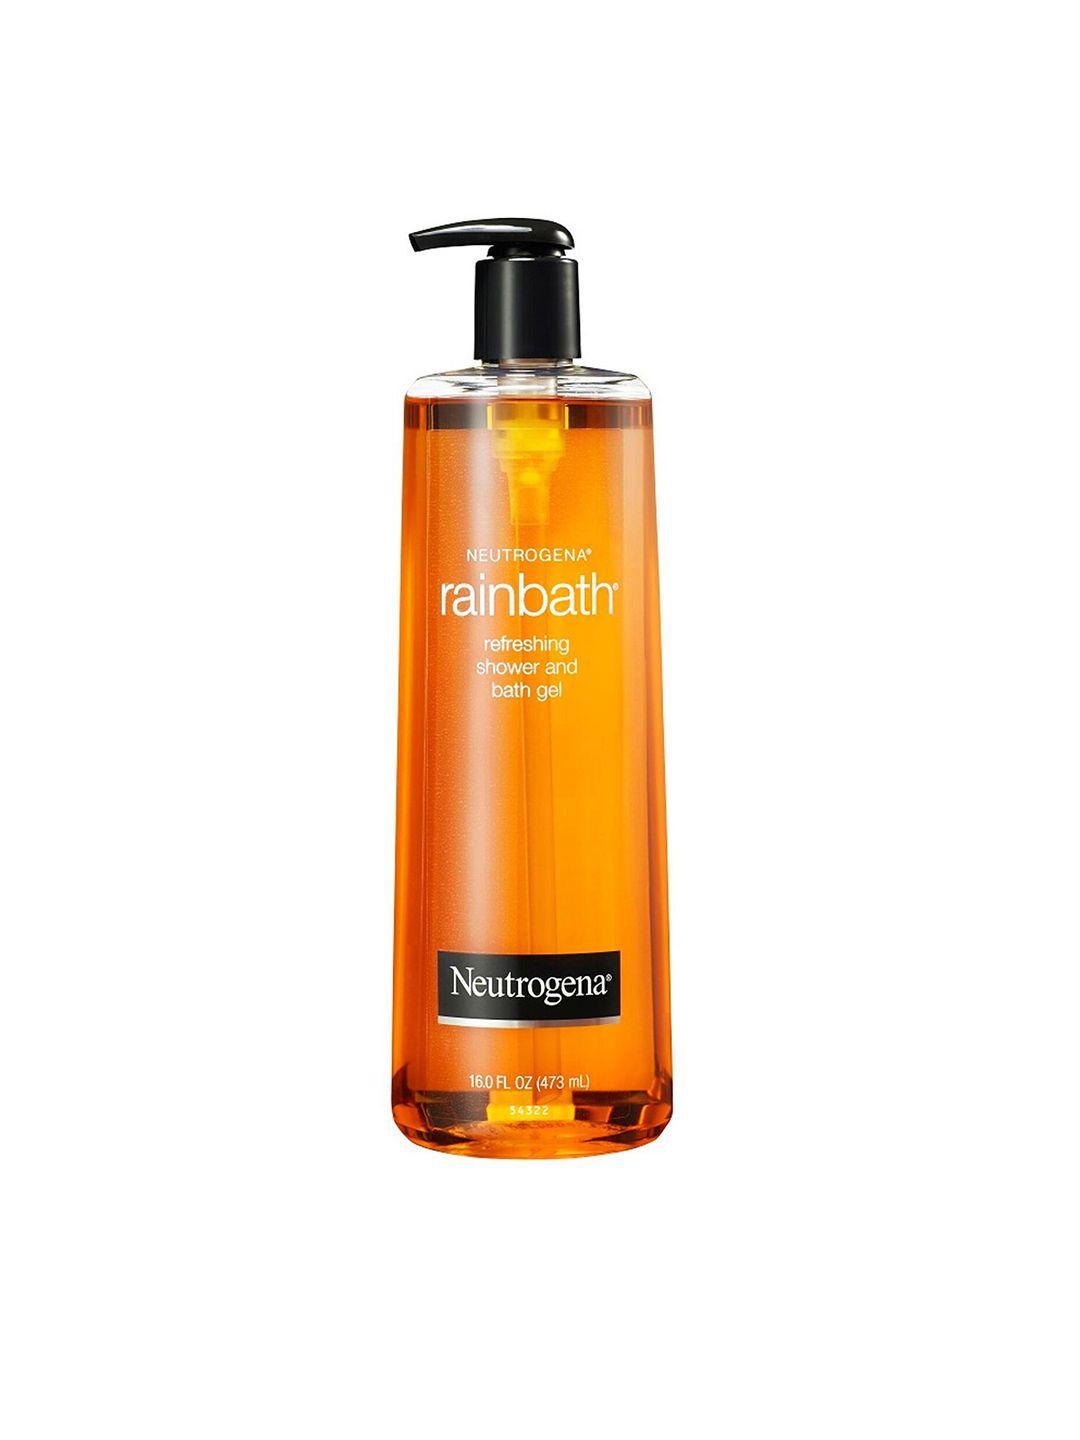 neutrogena-rainbath-refreshing-shower-and-bath-gel-473-ml